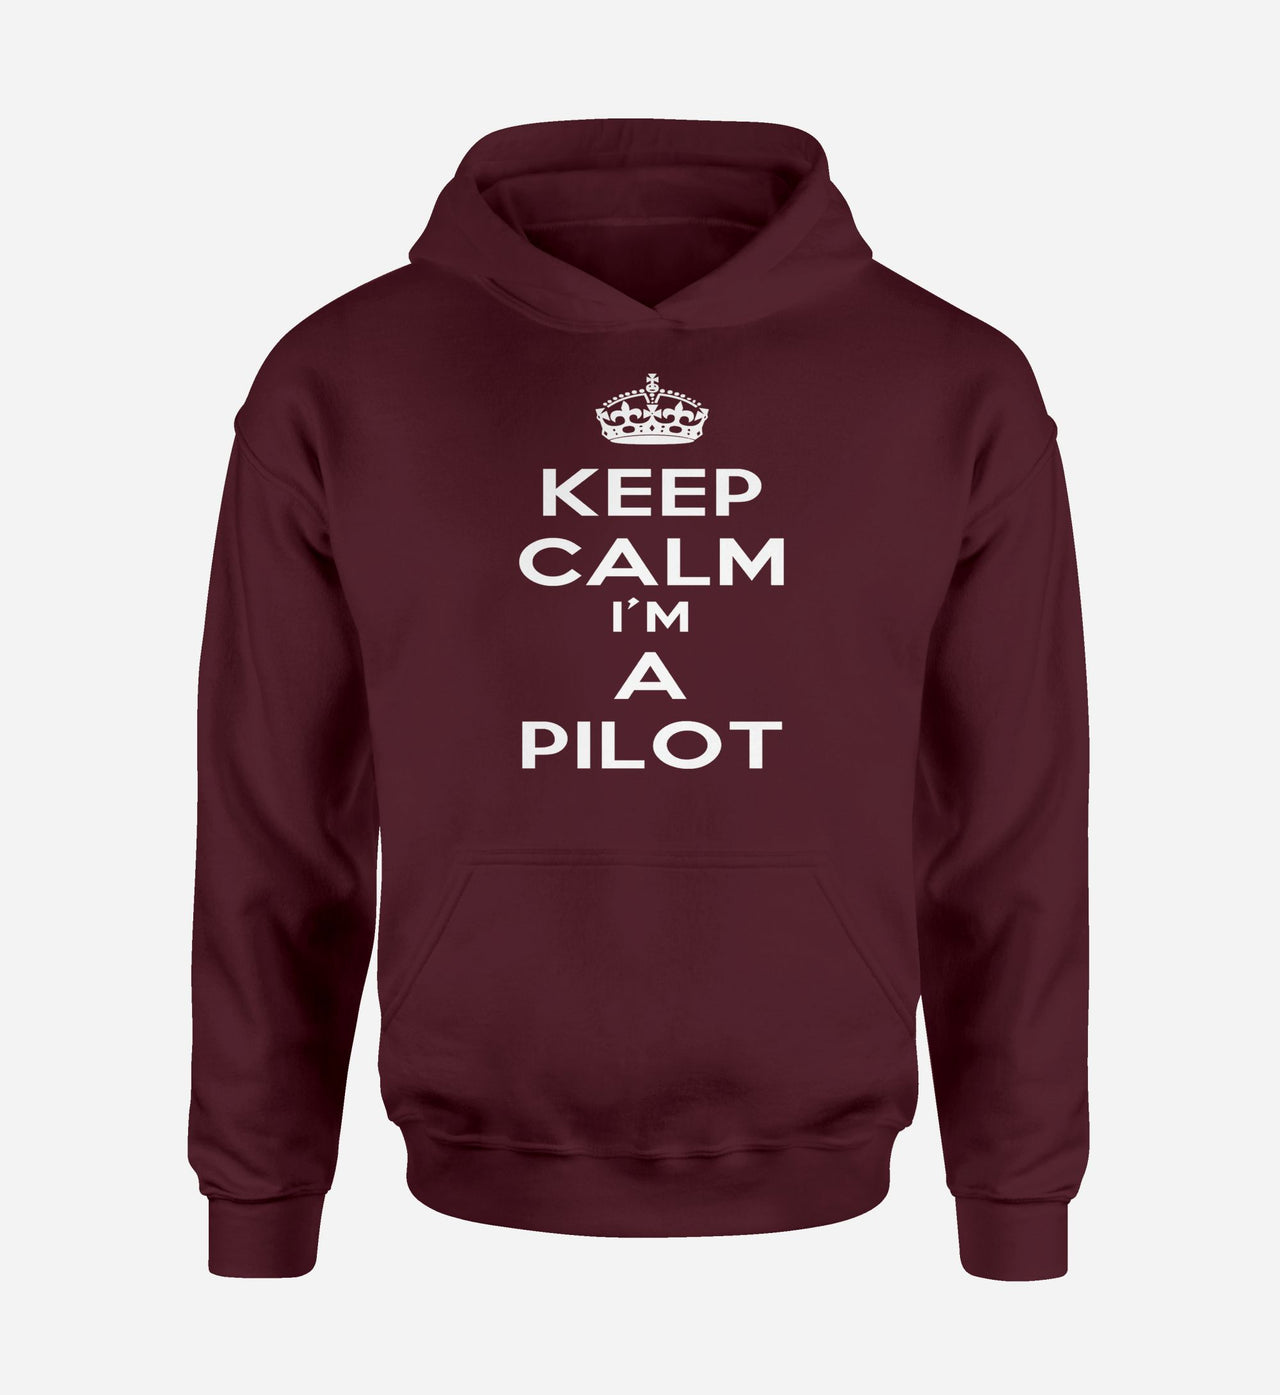 Keep Calm I'm a Pilot Designed Hoodies